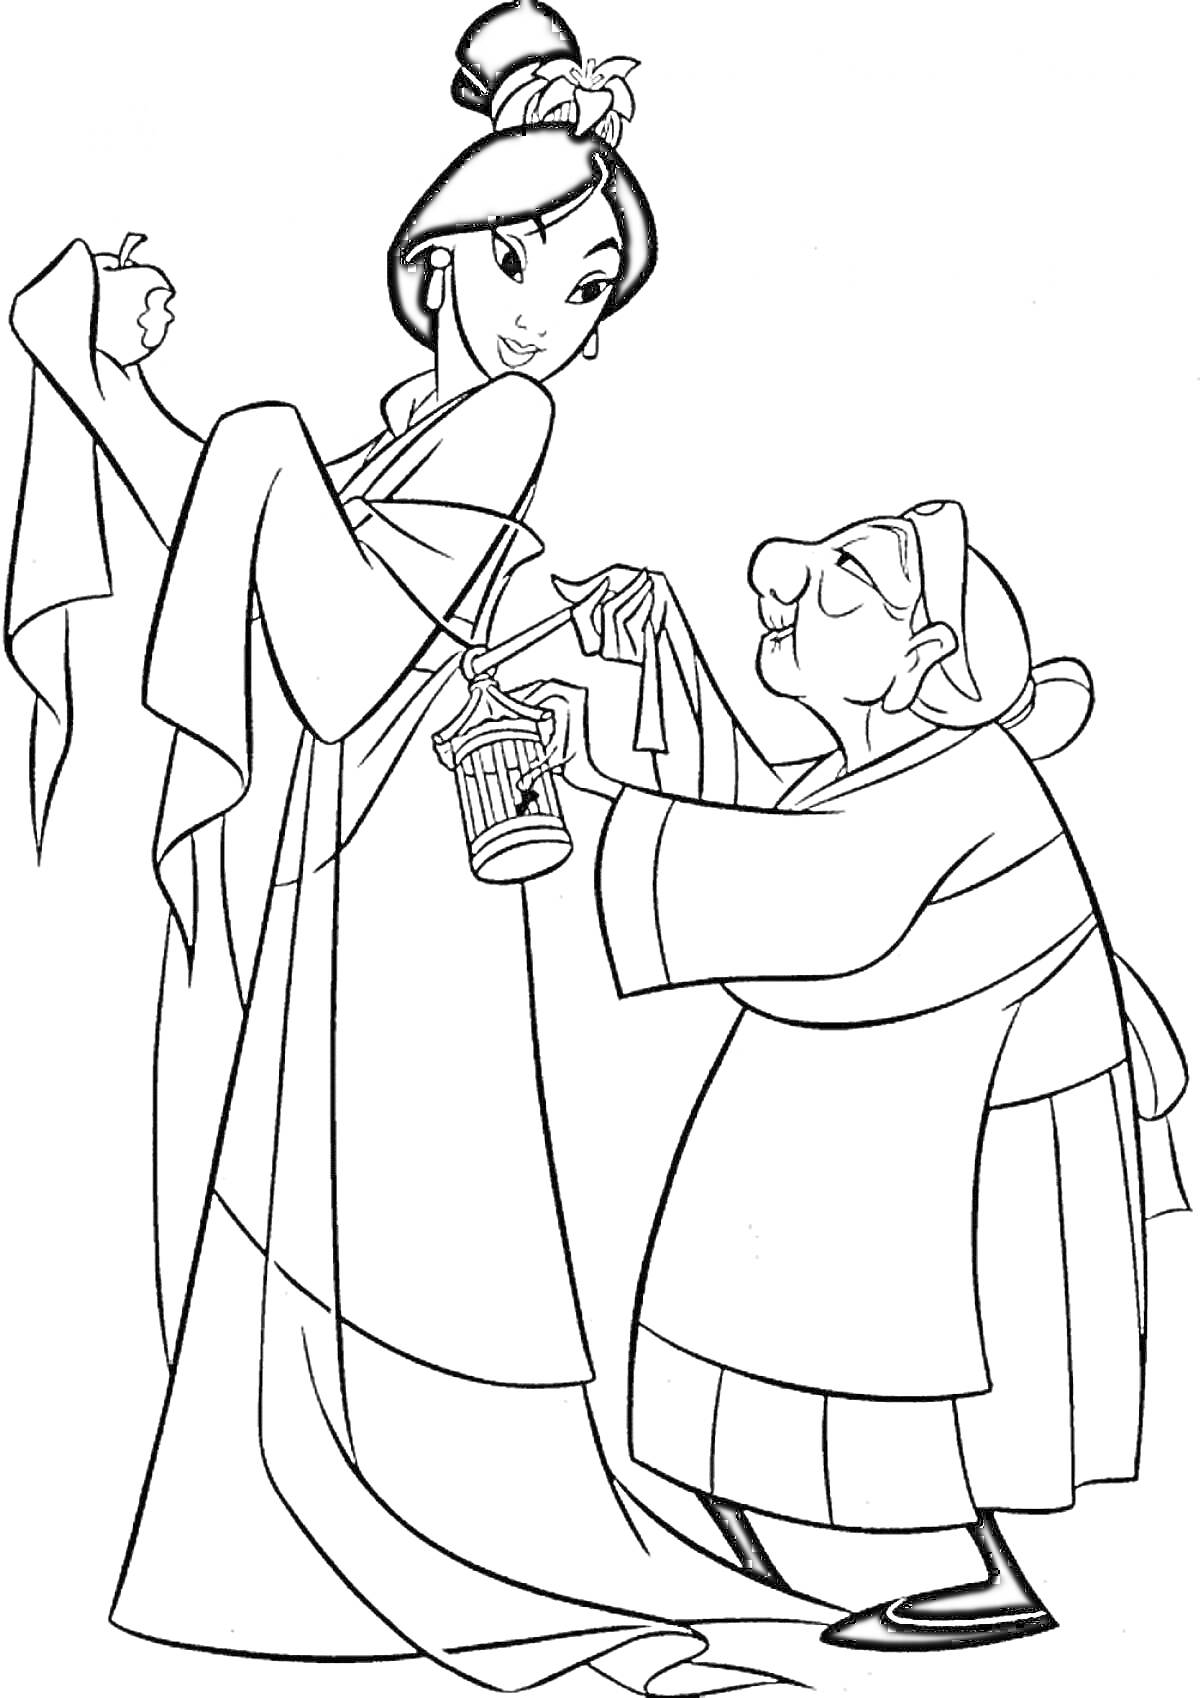 Раскраска Мулан с яблоком в руке рядом с пожилой женщиной в традиционной одежде, держащей клетку с сверчком